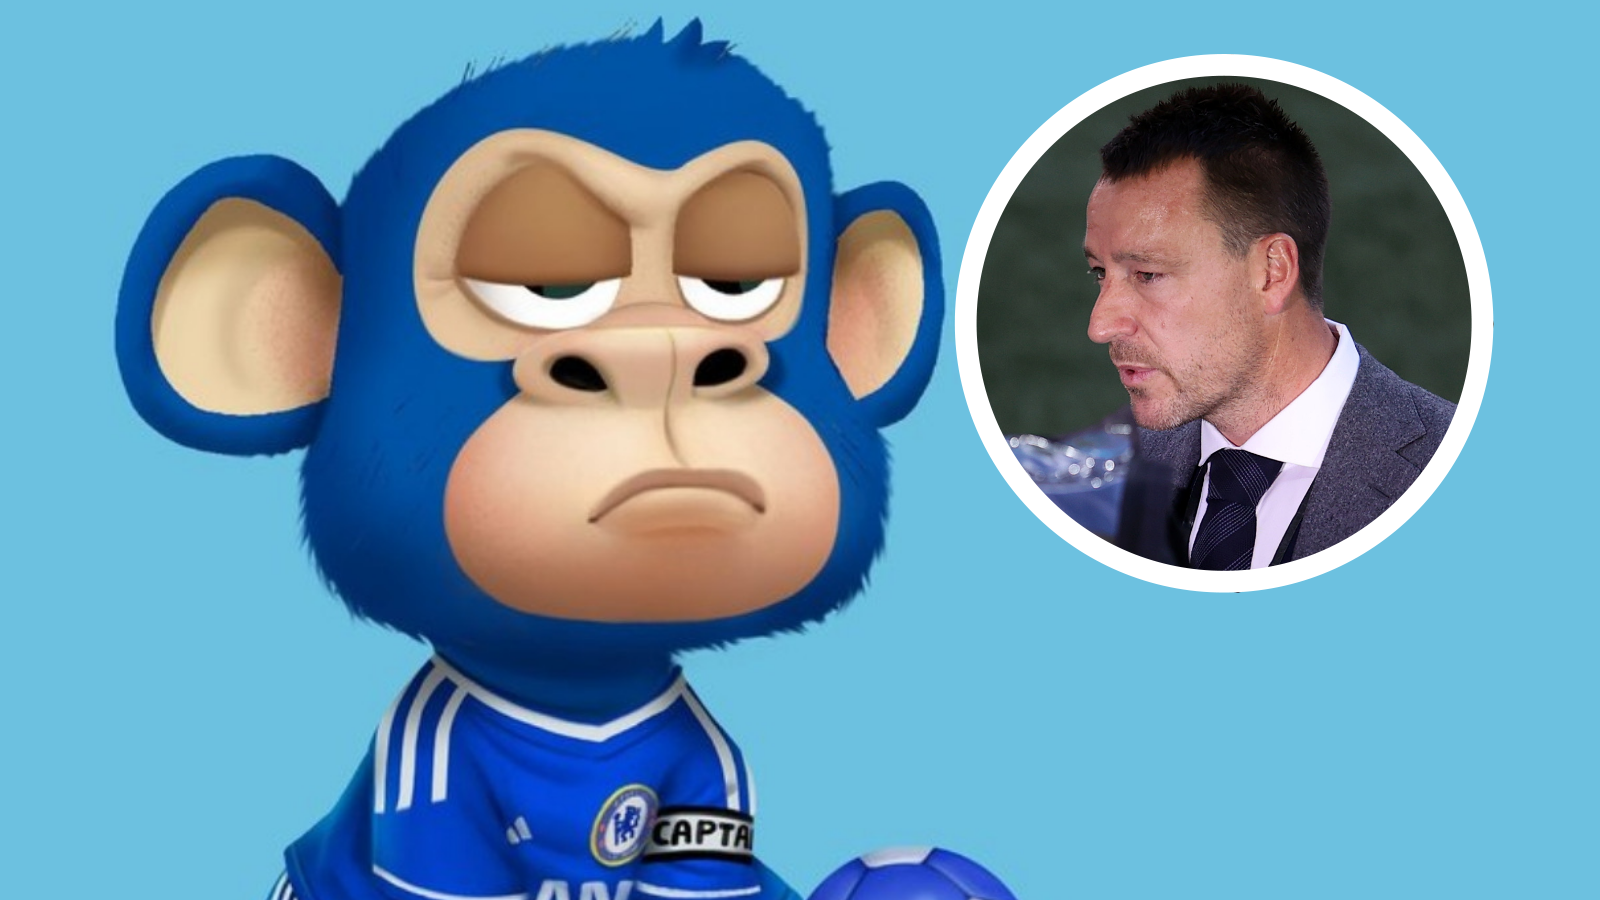 Lançado há 30 anos, 'Toki: Going Ape Spit' transformava jogador num macaco